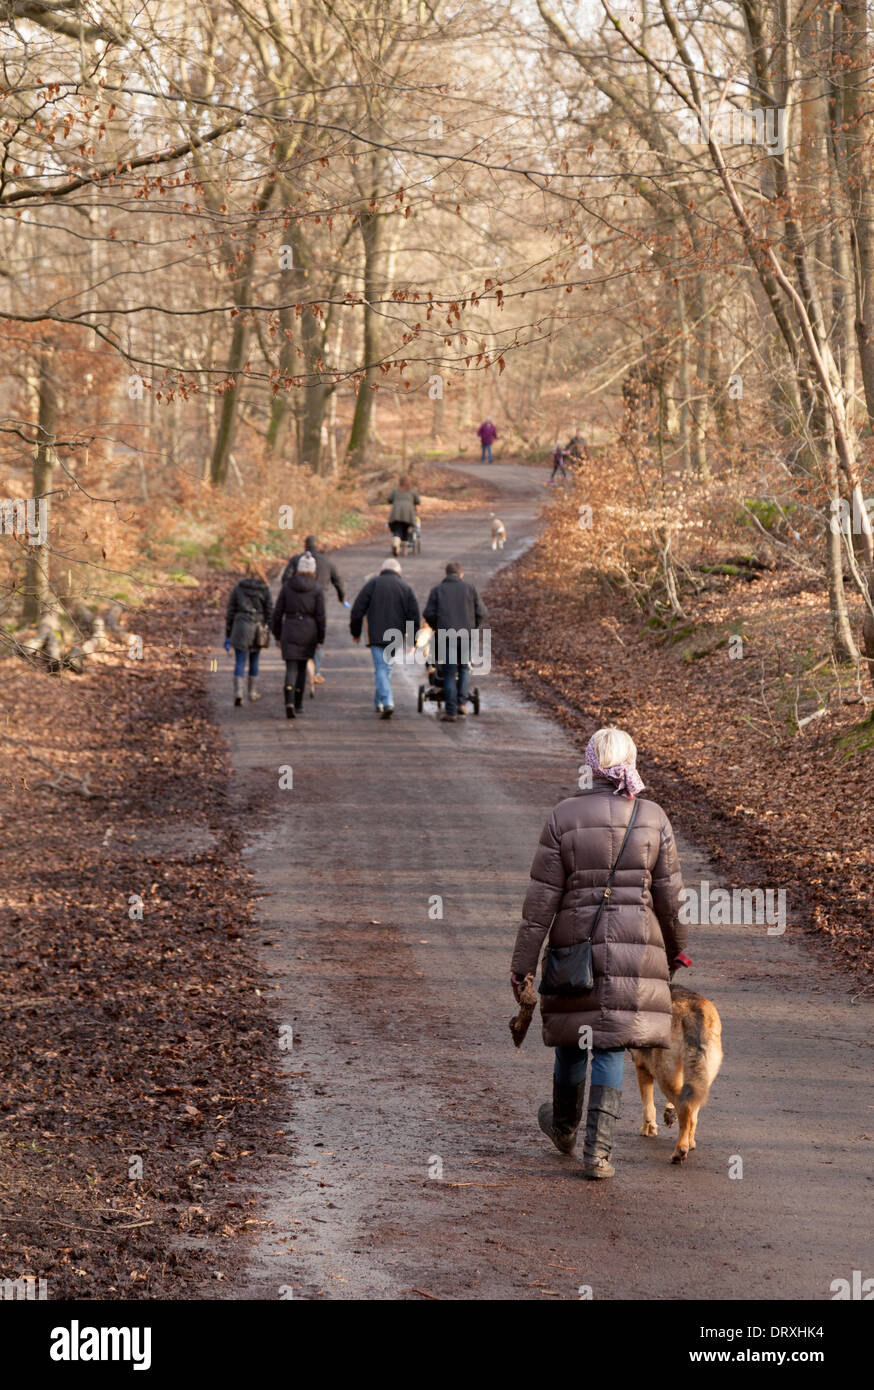 People walking the dog, in Burnham Beeches woods, Burnham, Buckinghamshire UK Stock Photo